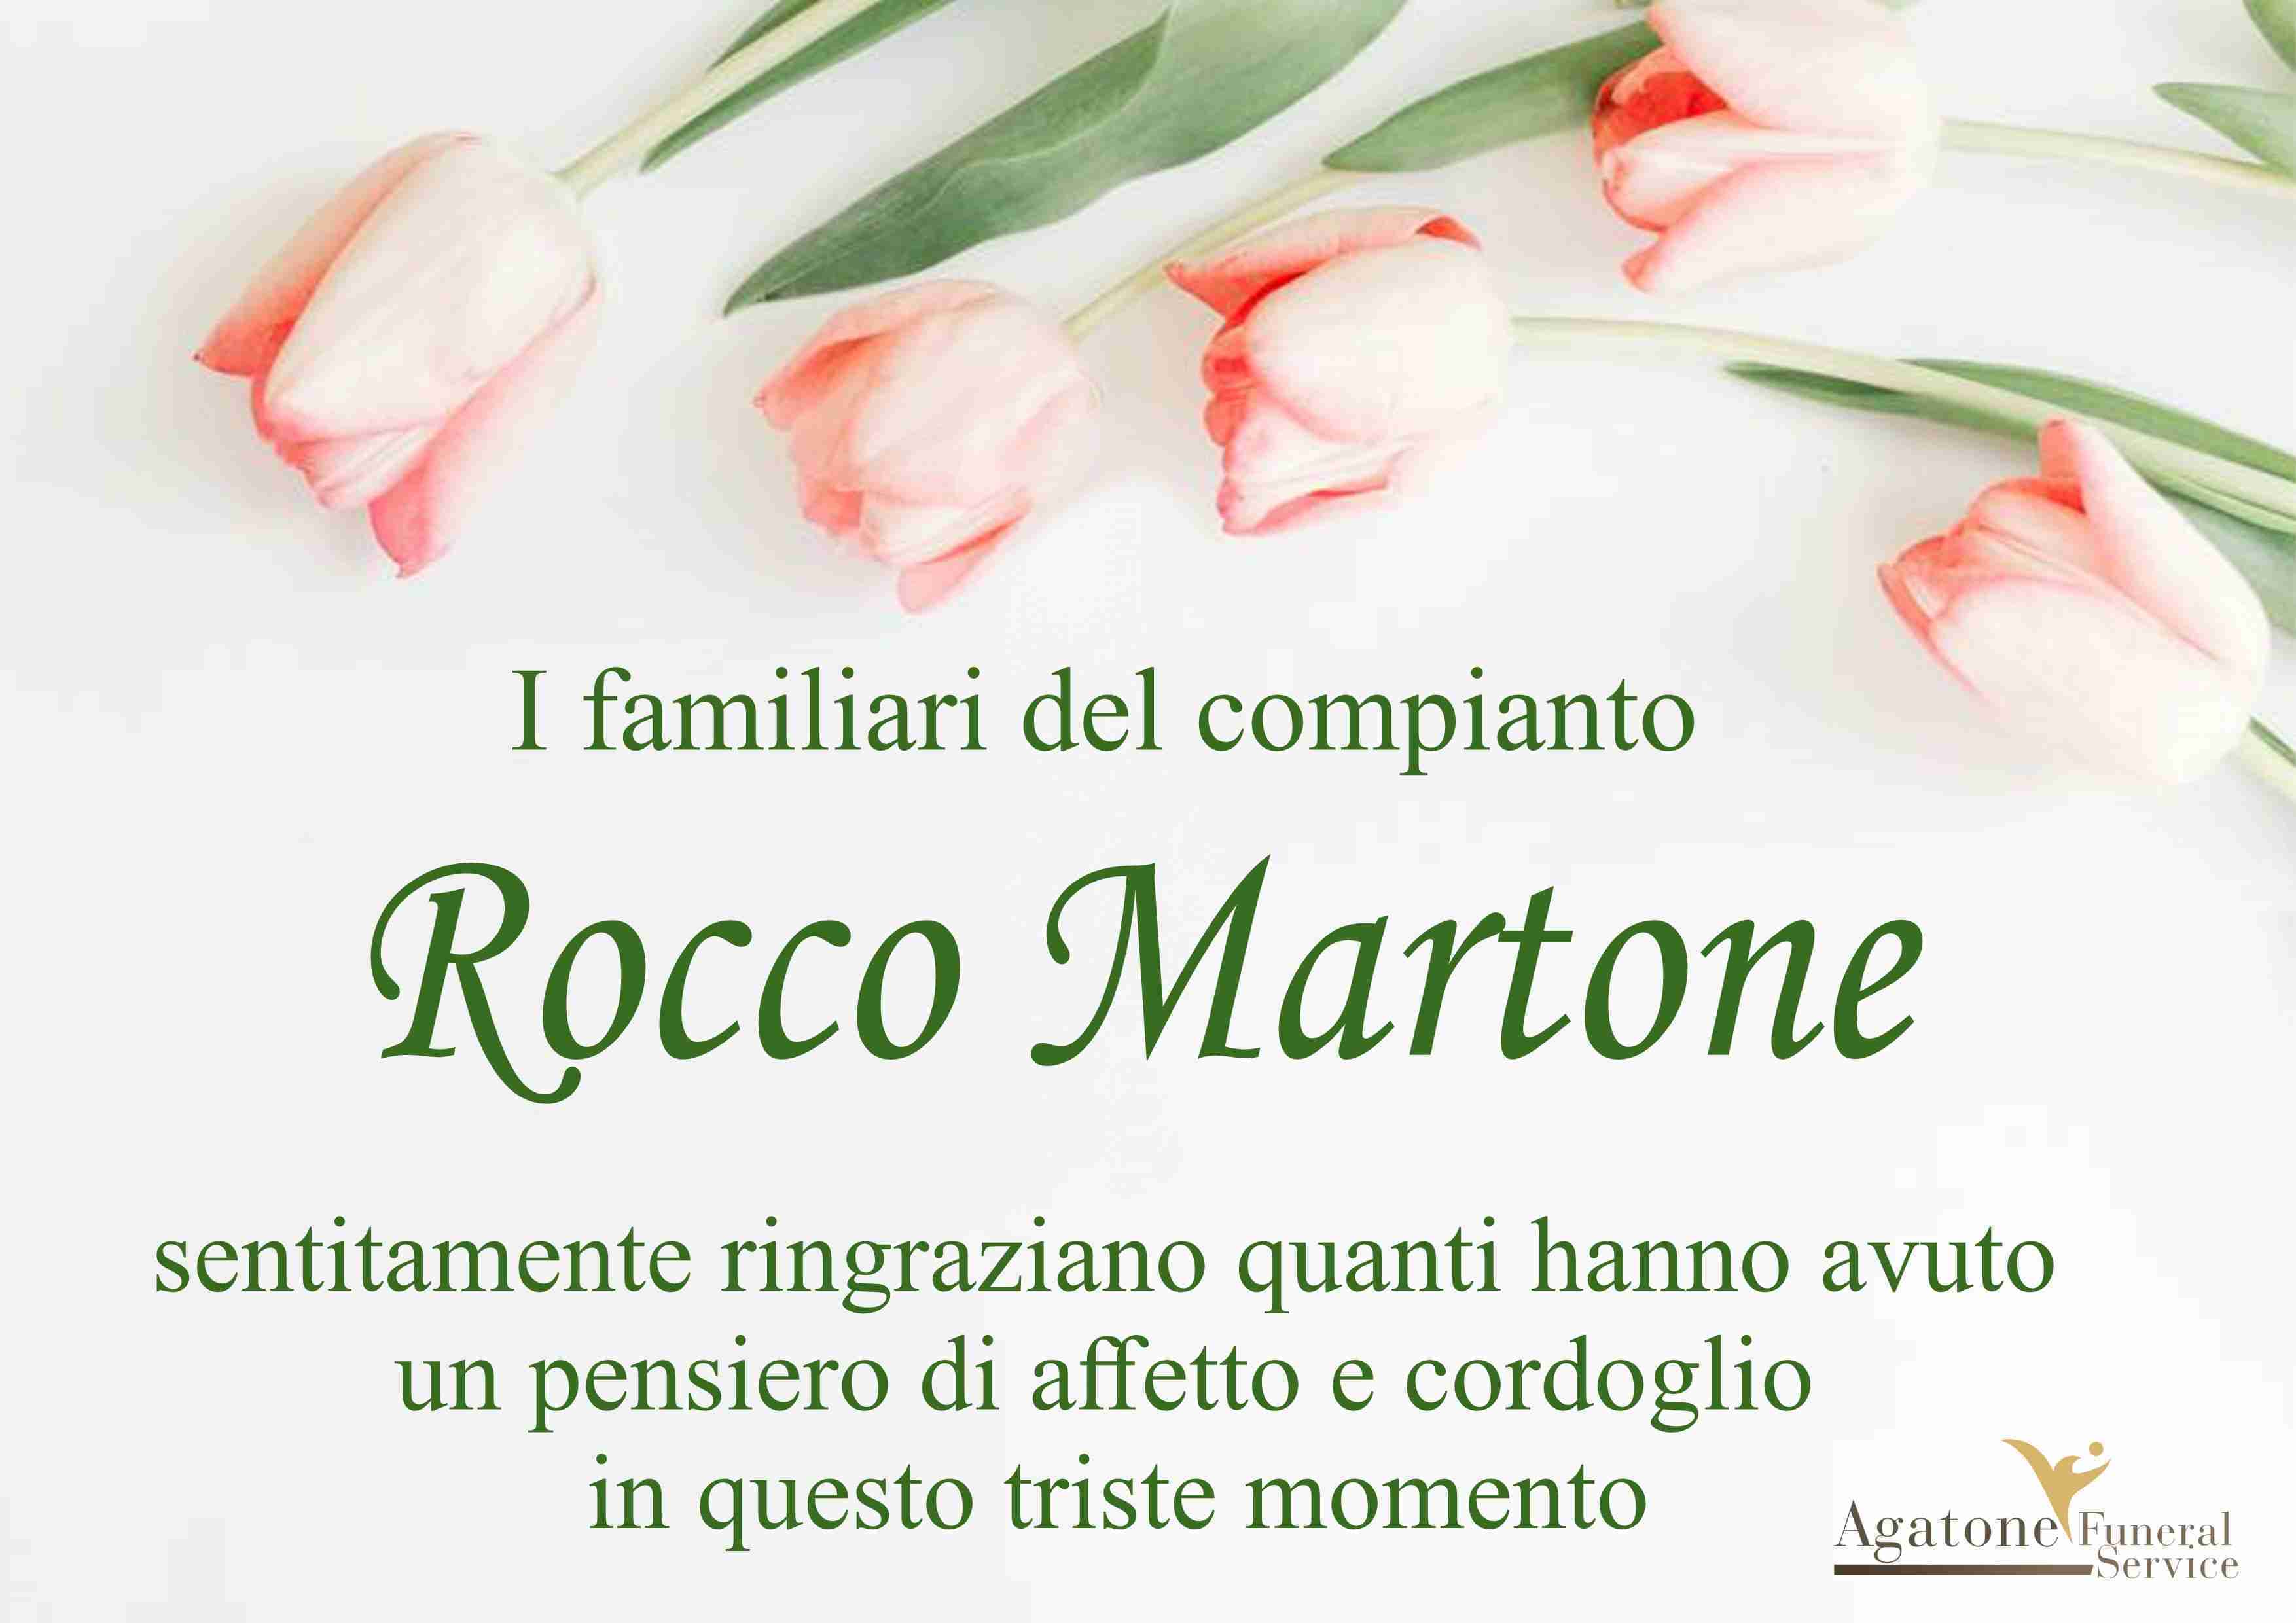 Rocco Martone